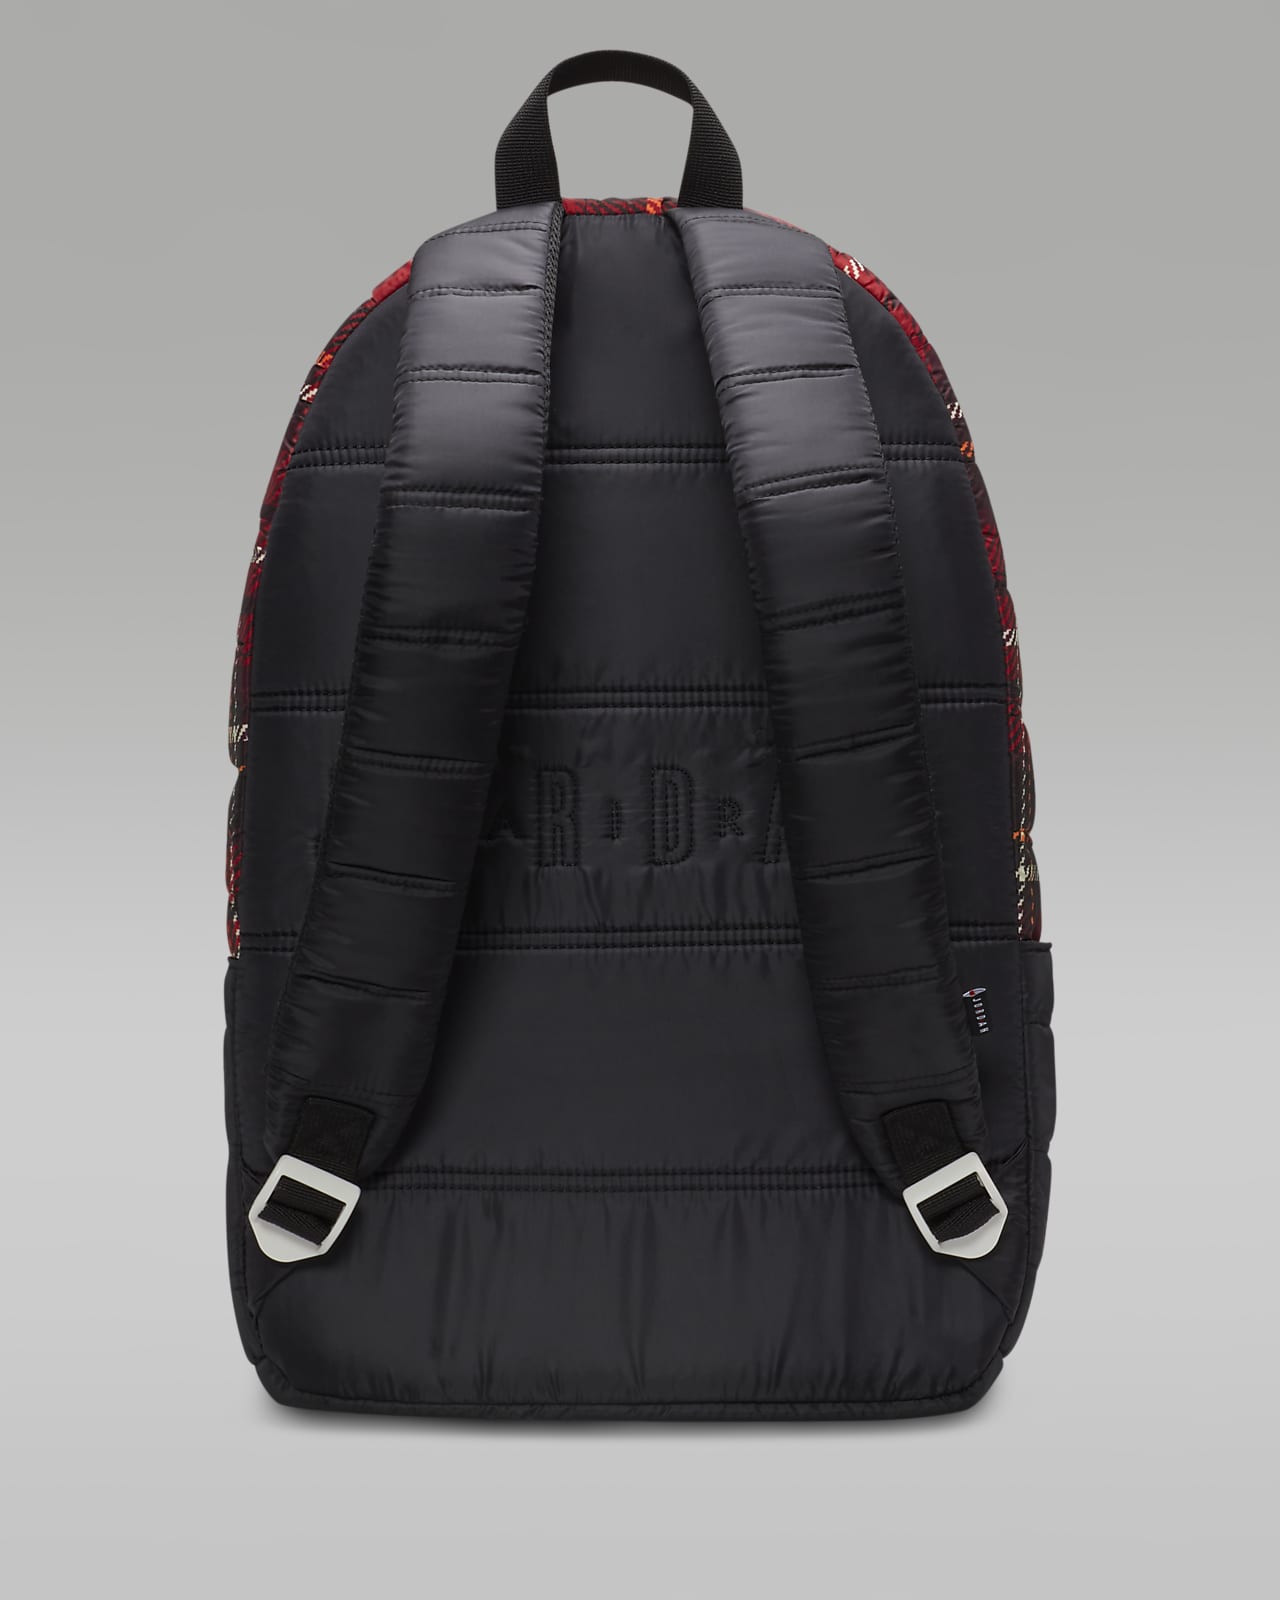 Jordan Flight Backpack Backpack (19L)